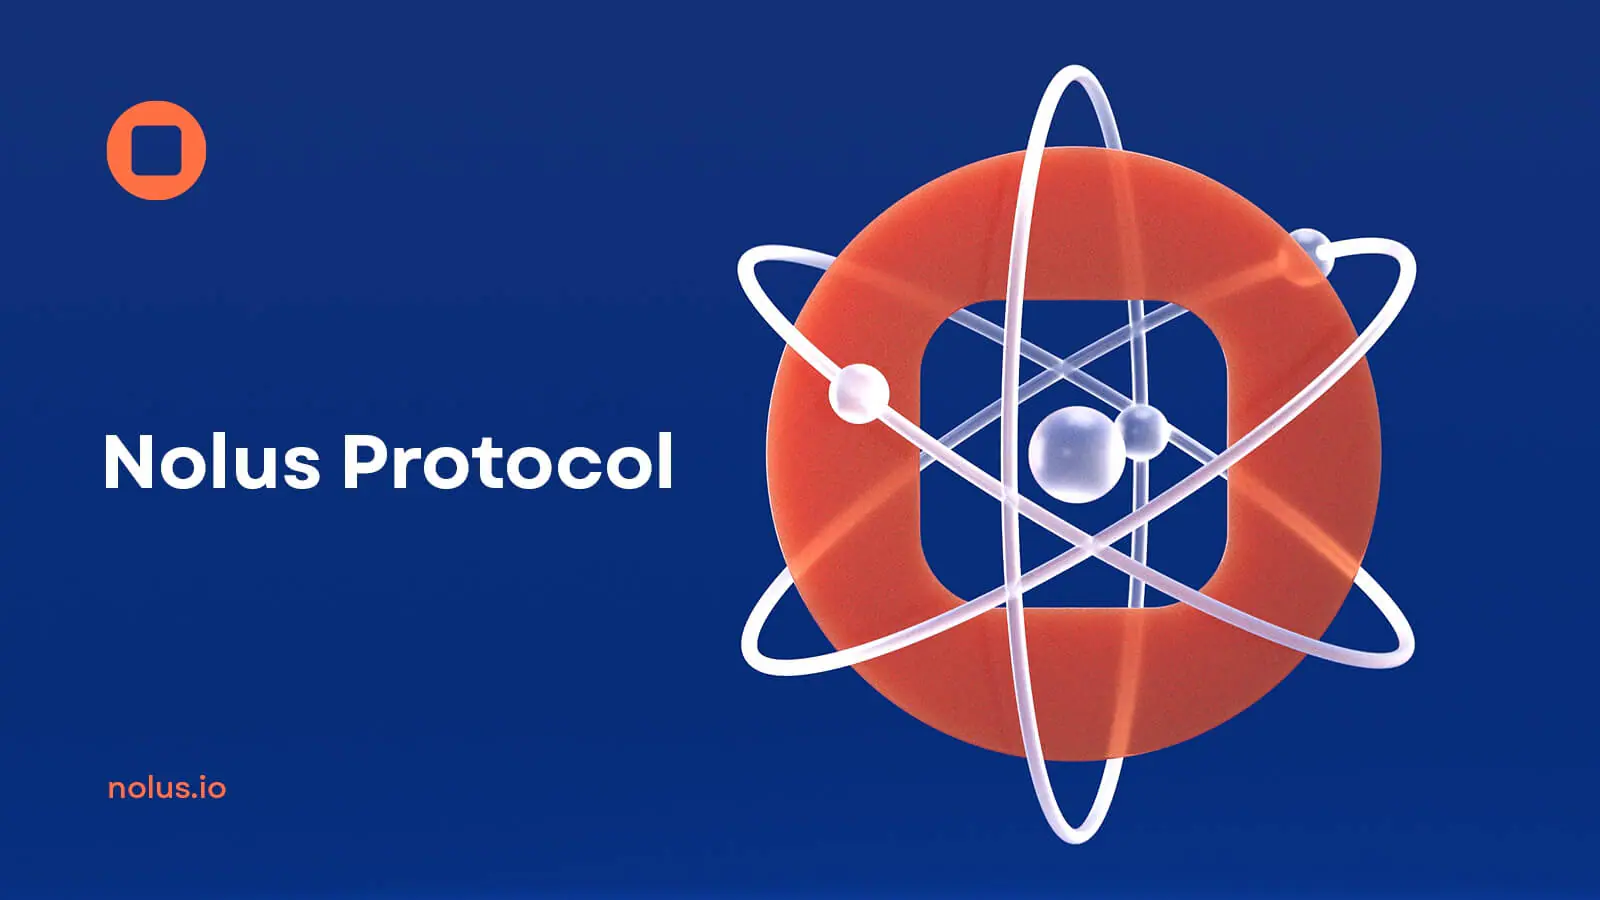 Nolus Protocol dẫn đầu hiệu suất xuất phát trên Stellar